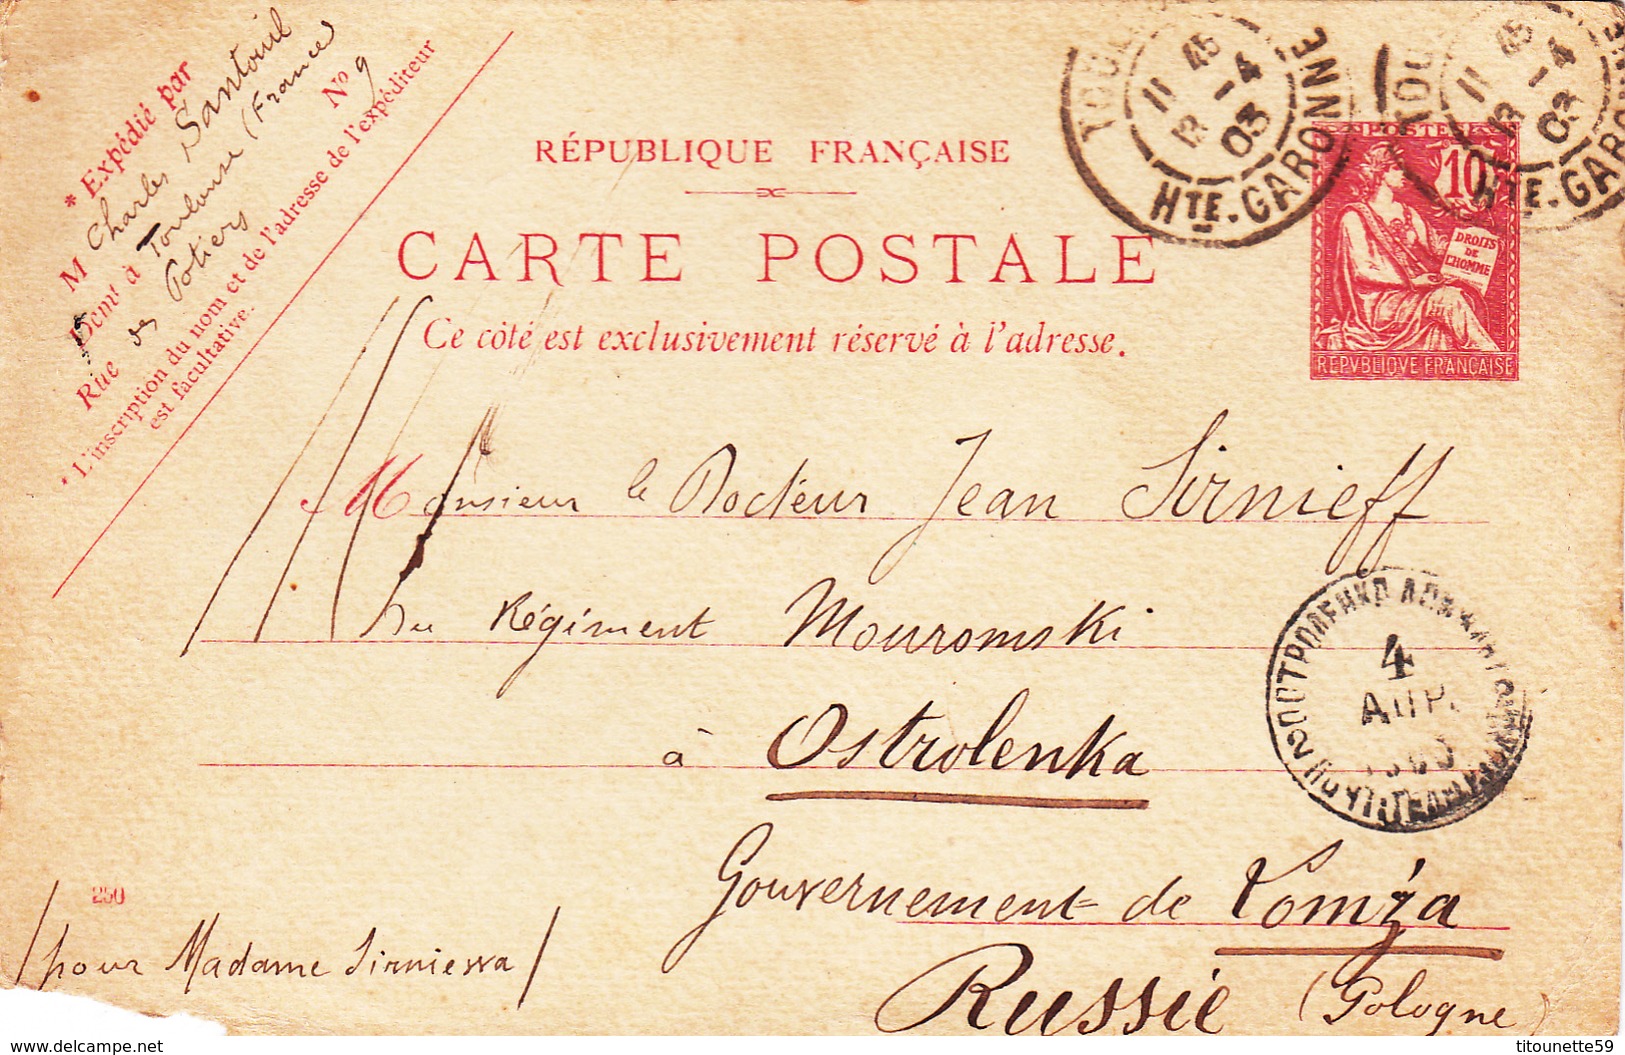 2 GROS LOTS de LETTRES destination RUSSIE avec CONTENANT- DEUIL-Beaux Cachets-Période 1900-1910-RUSSIE-Port OFFERT(1/20)